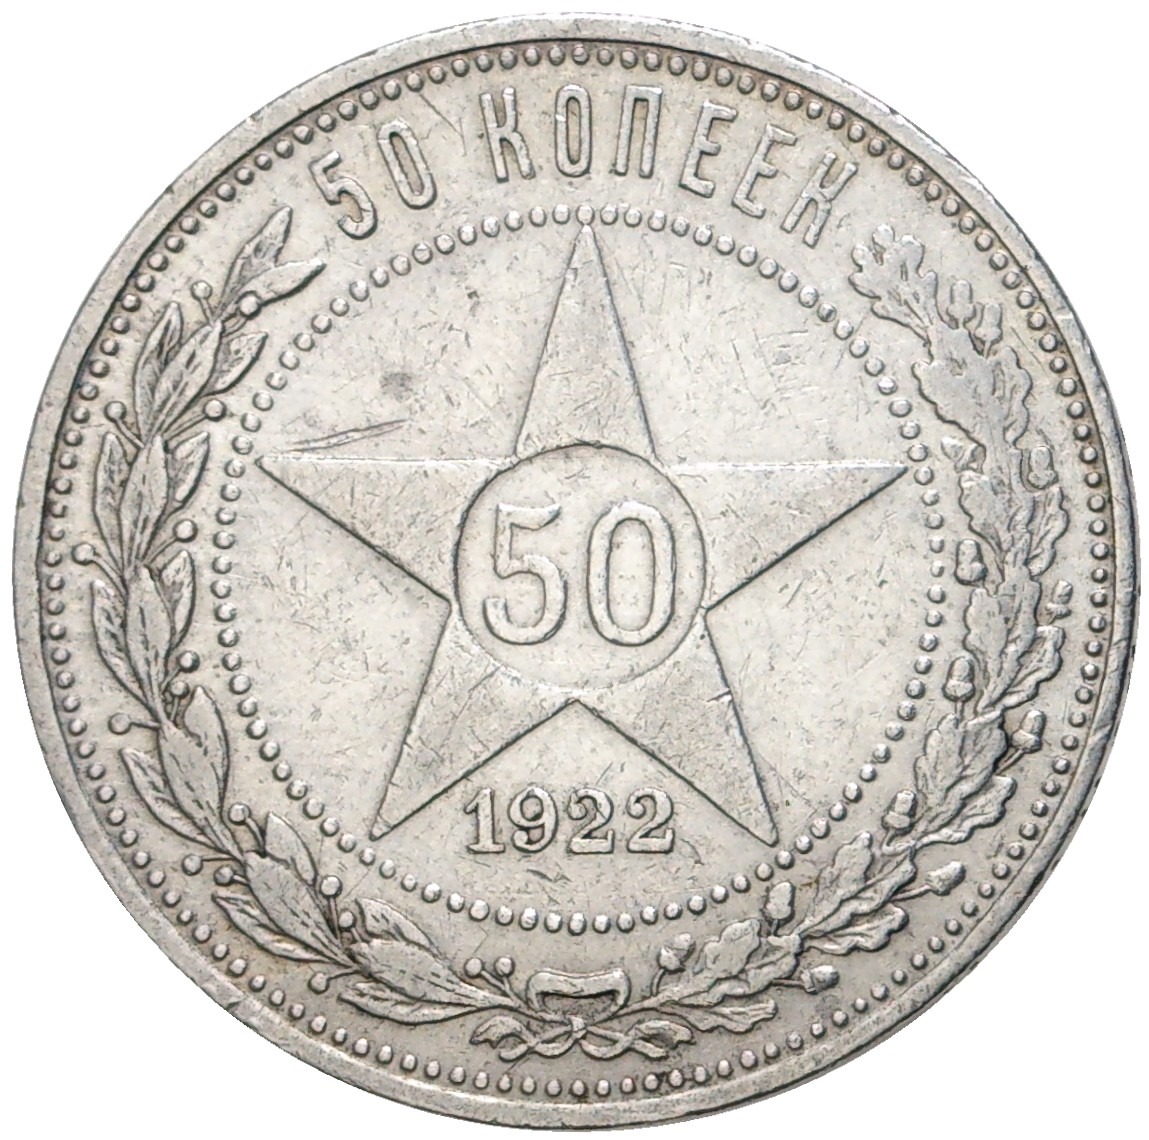 50 копеек 1922 года серебро. 50 Копеек 1922. 5 Копеек 1922. Монеты 1922 года. 50 Копеек 1922 года пл Грут.